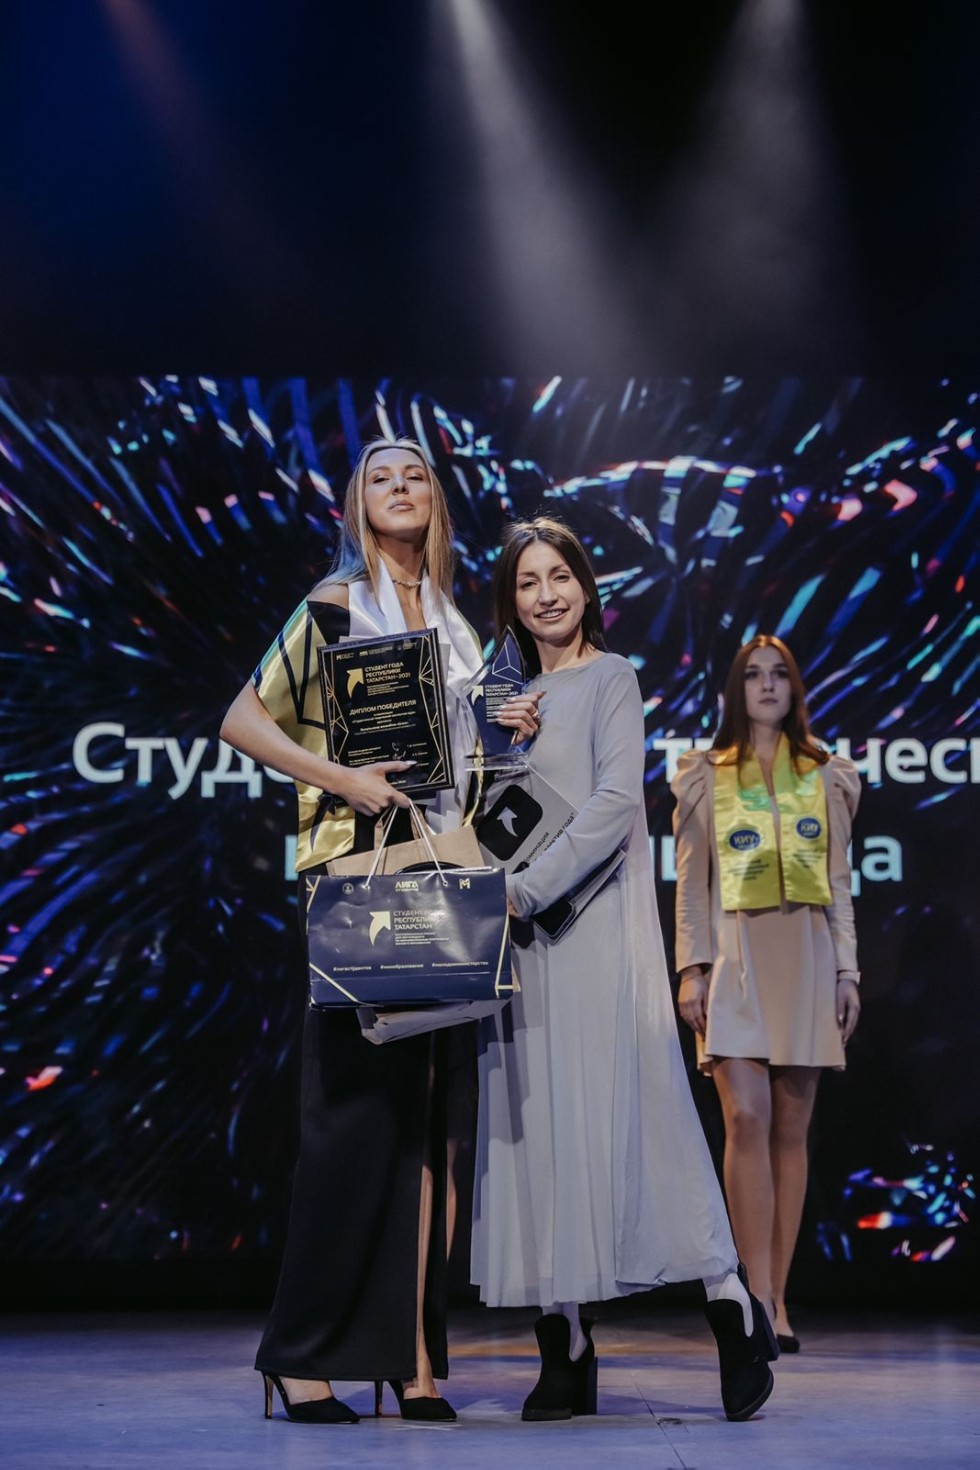 Состоялась церемония вручения Республиканской премии 'Студент года Республики Татарстан - 2021' ,имо